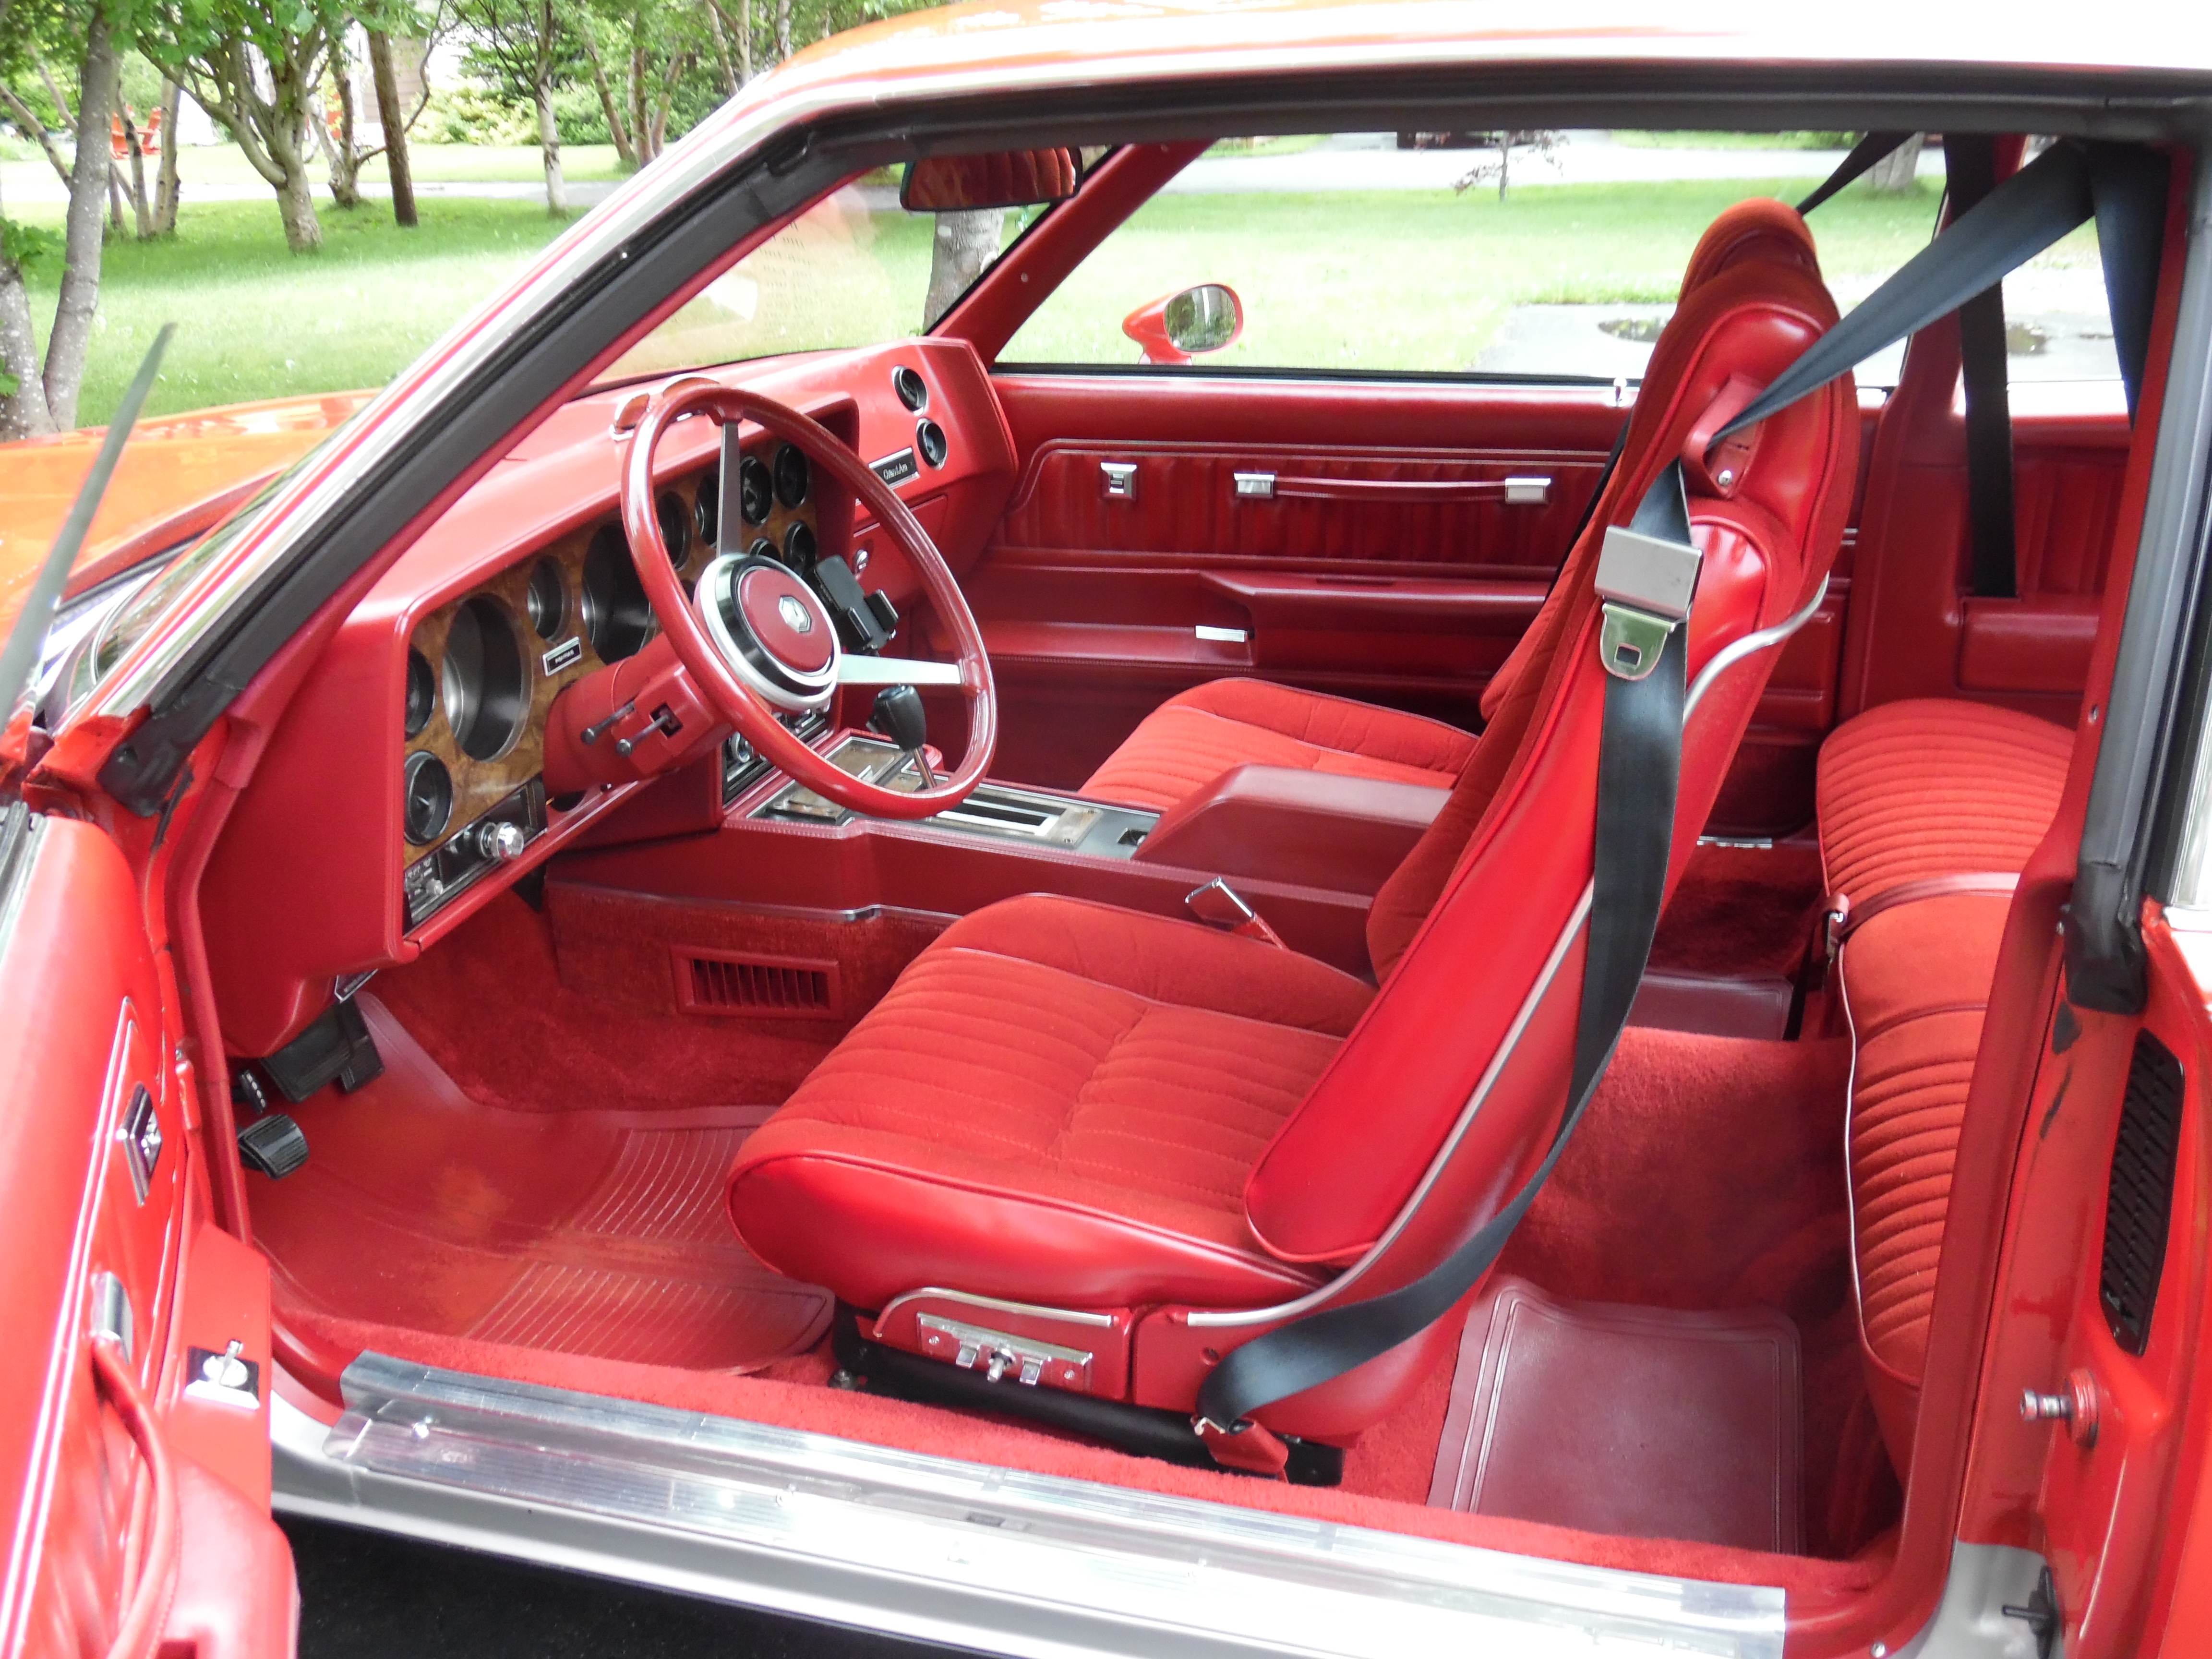 1978 Grand Am seats reupholstered | GBodyForum - '78-'88 General Motors